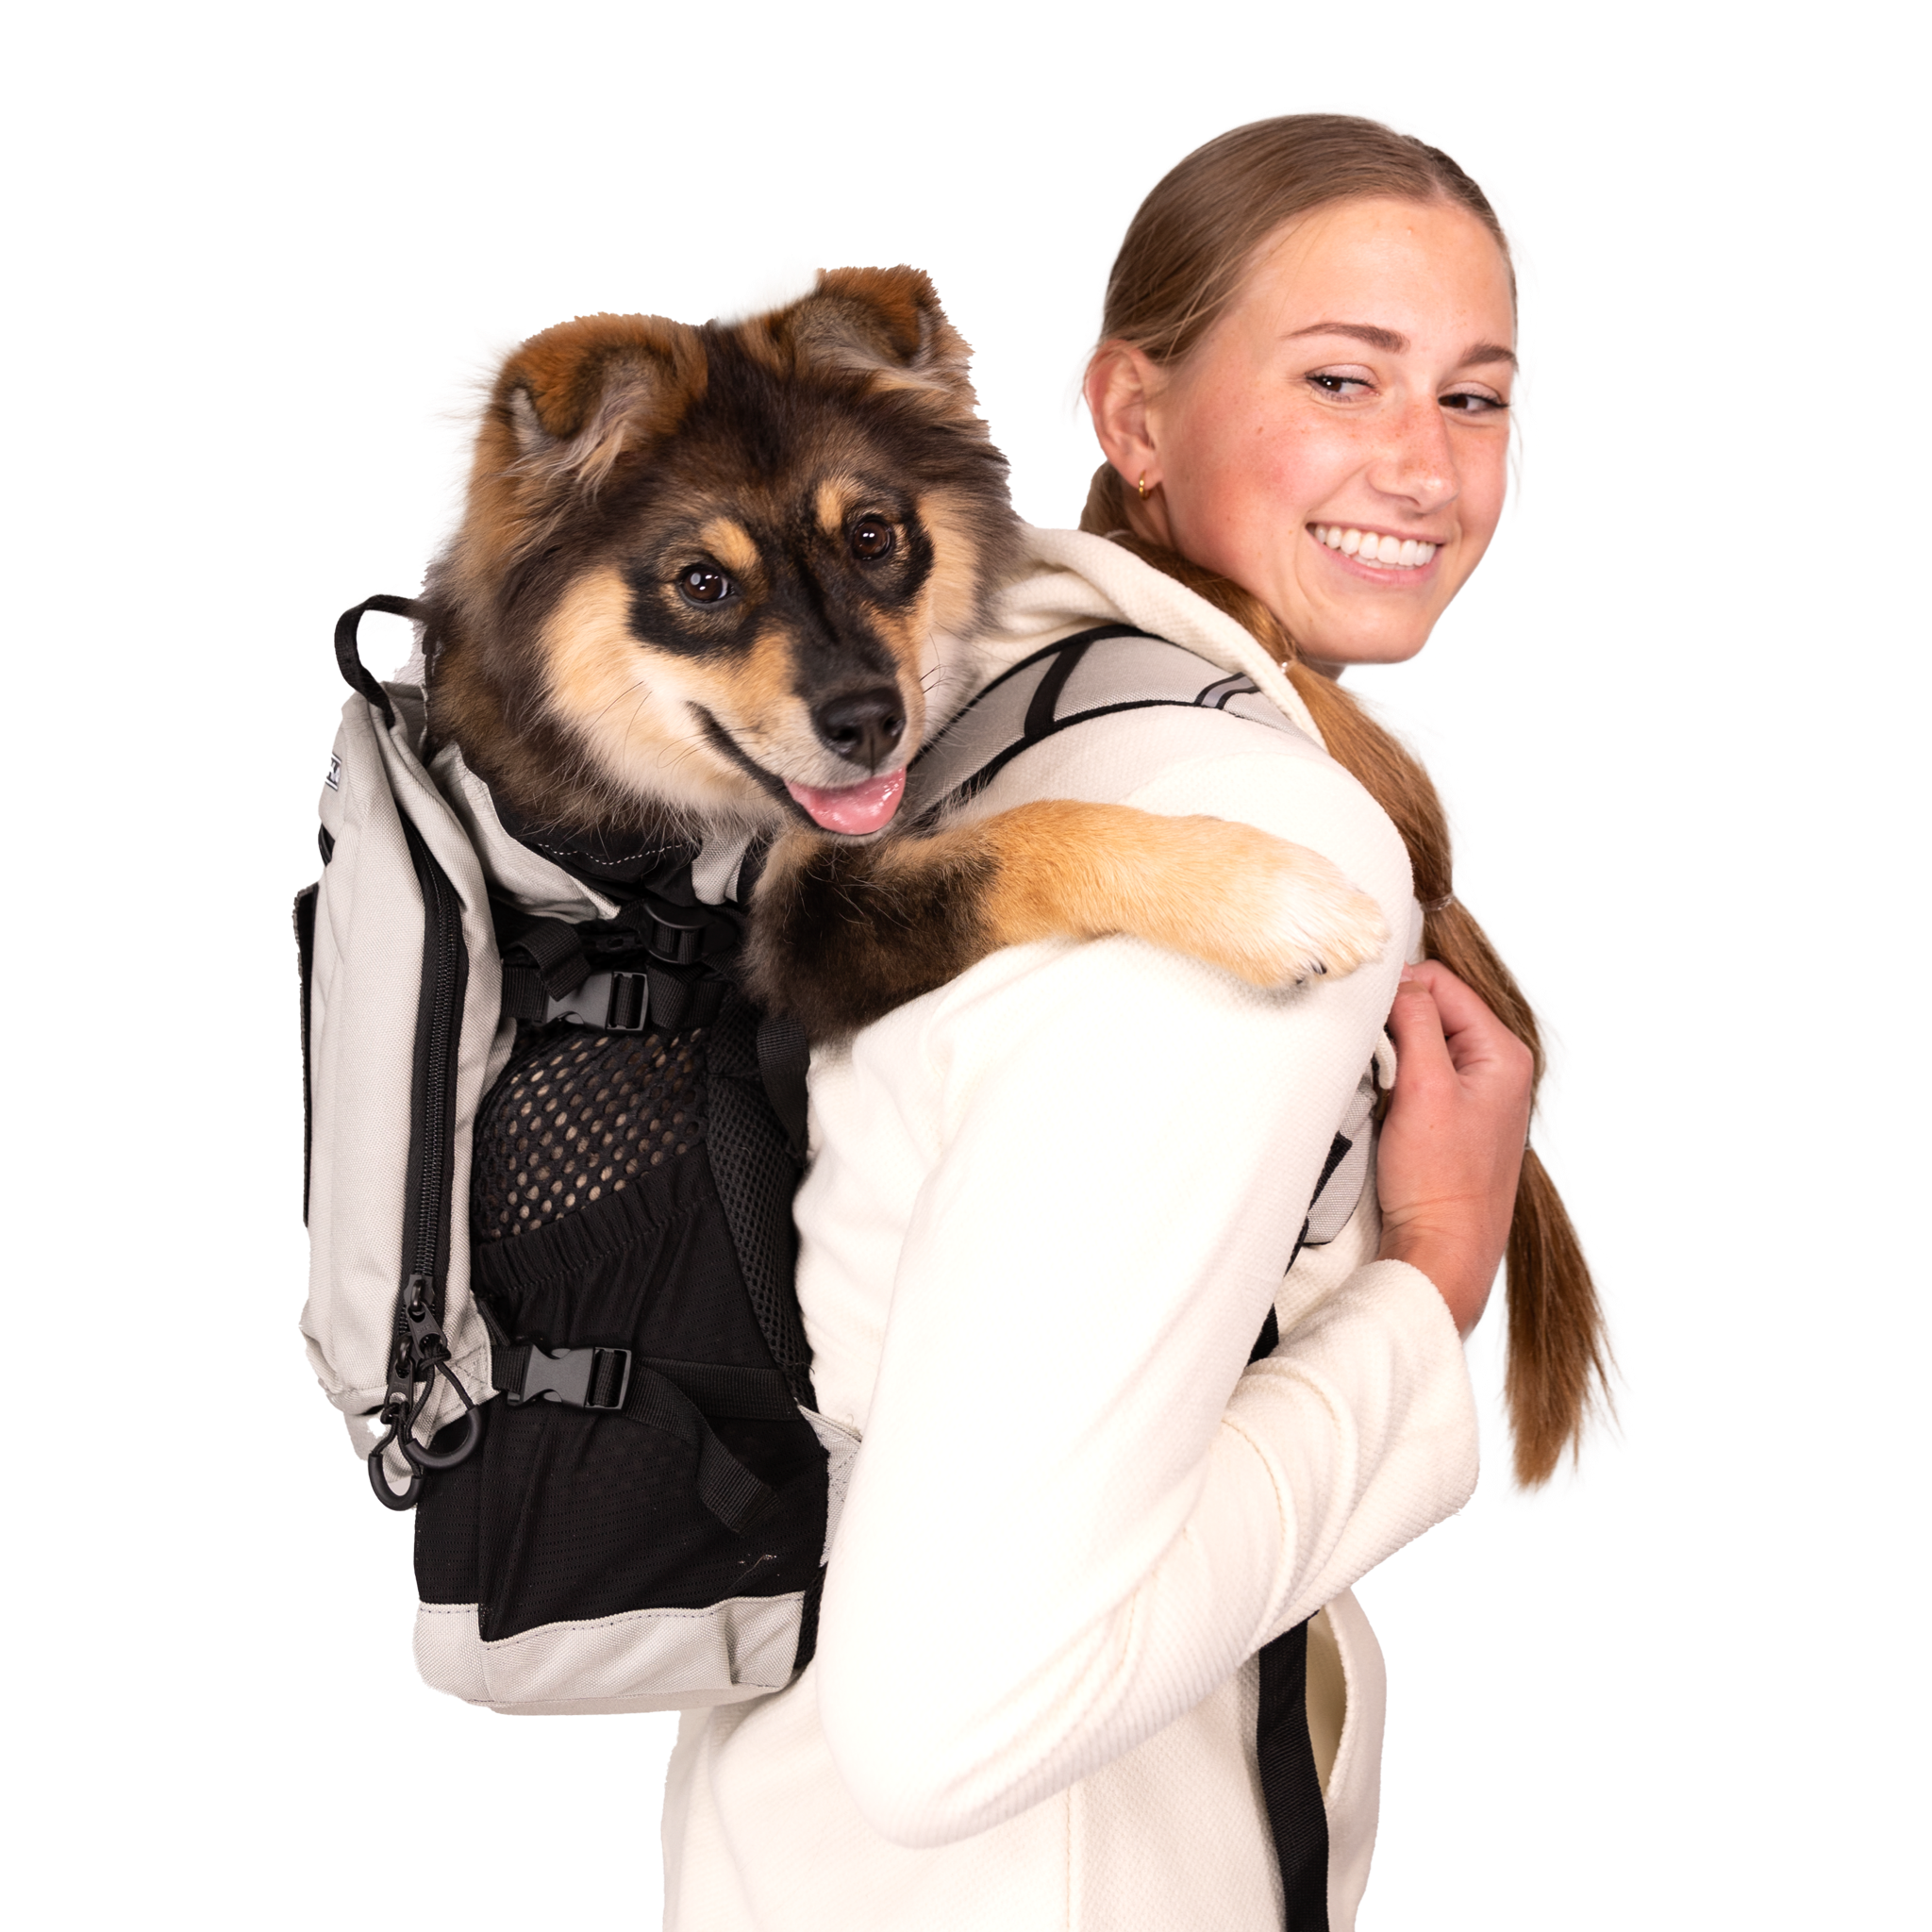 K9 Sport Sack ® PLUS 2 - Dog Carrier